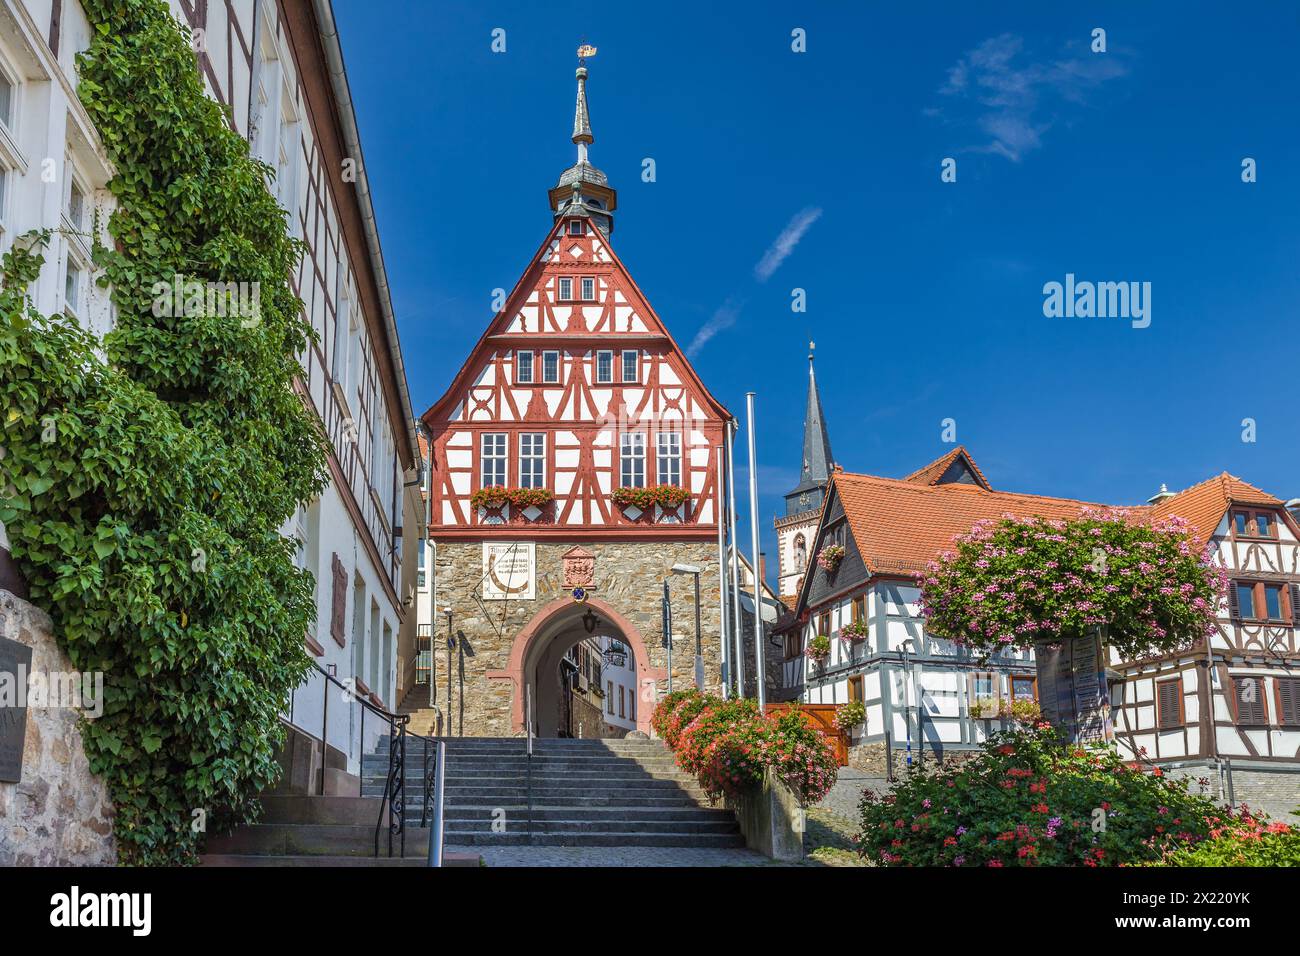 Geographie / Reise, Deutschland, Hessen, Oberursel, altes Rathaus von Oberursel, Taunus, ADDITIONAL-RIGHTS-CLEARANCE-INFO-NOT-AVAILABLE Stockfoto